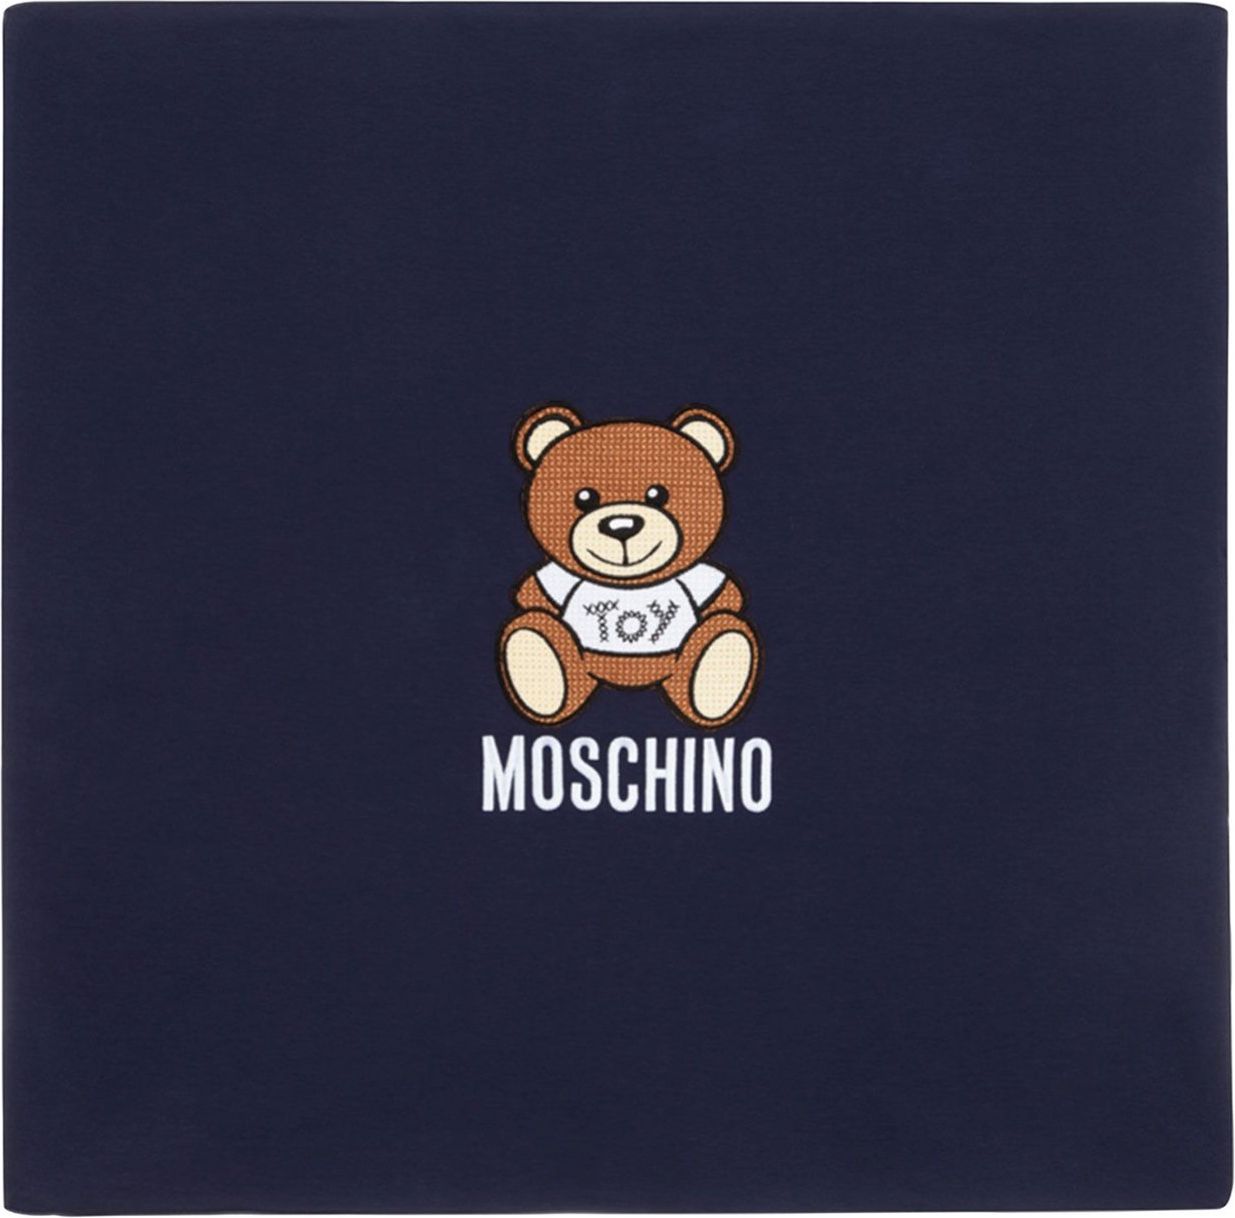 Moschino Moschino MRB005 babyaccessoire navy Blauw